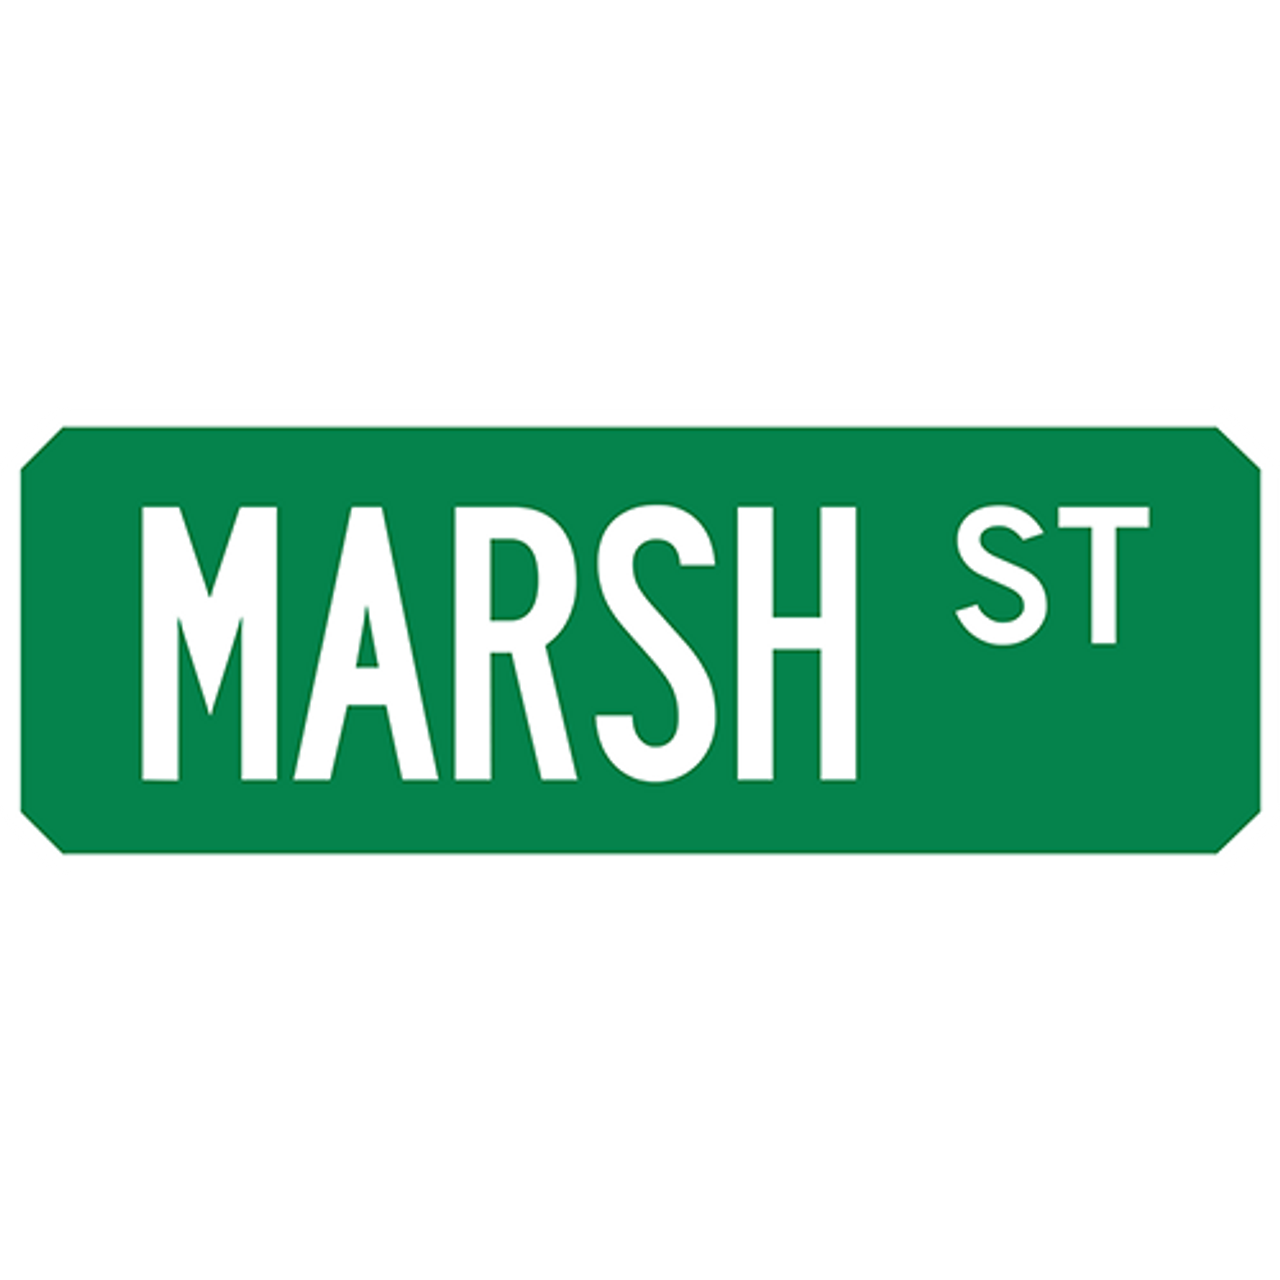 Marsh St Street Sign Muncie